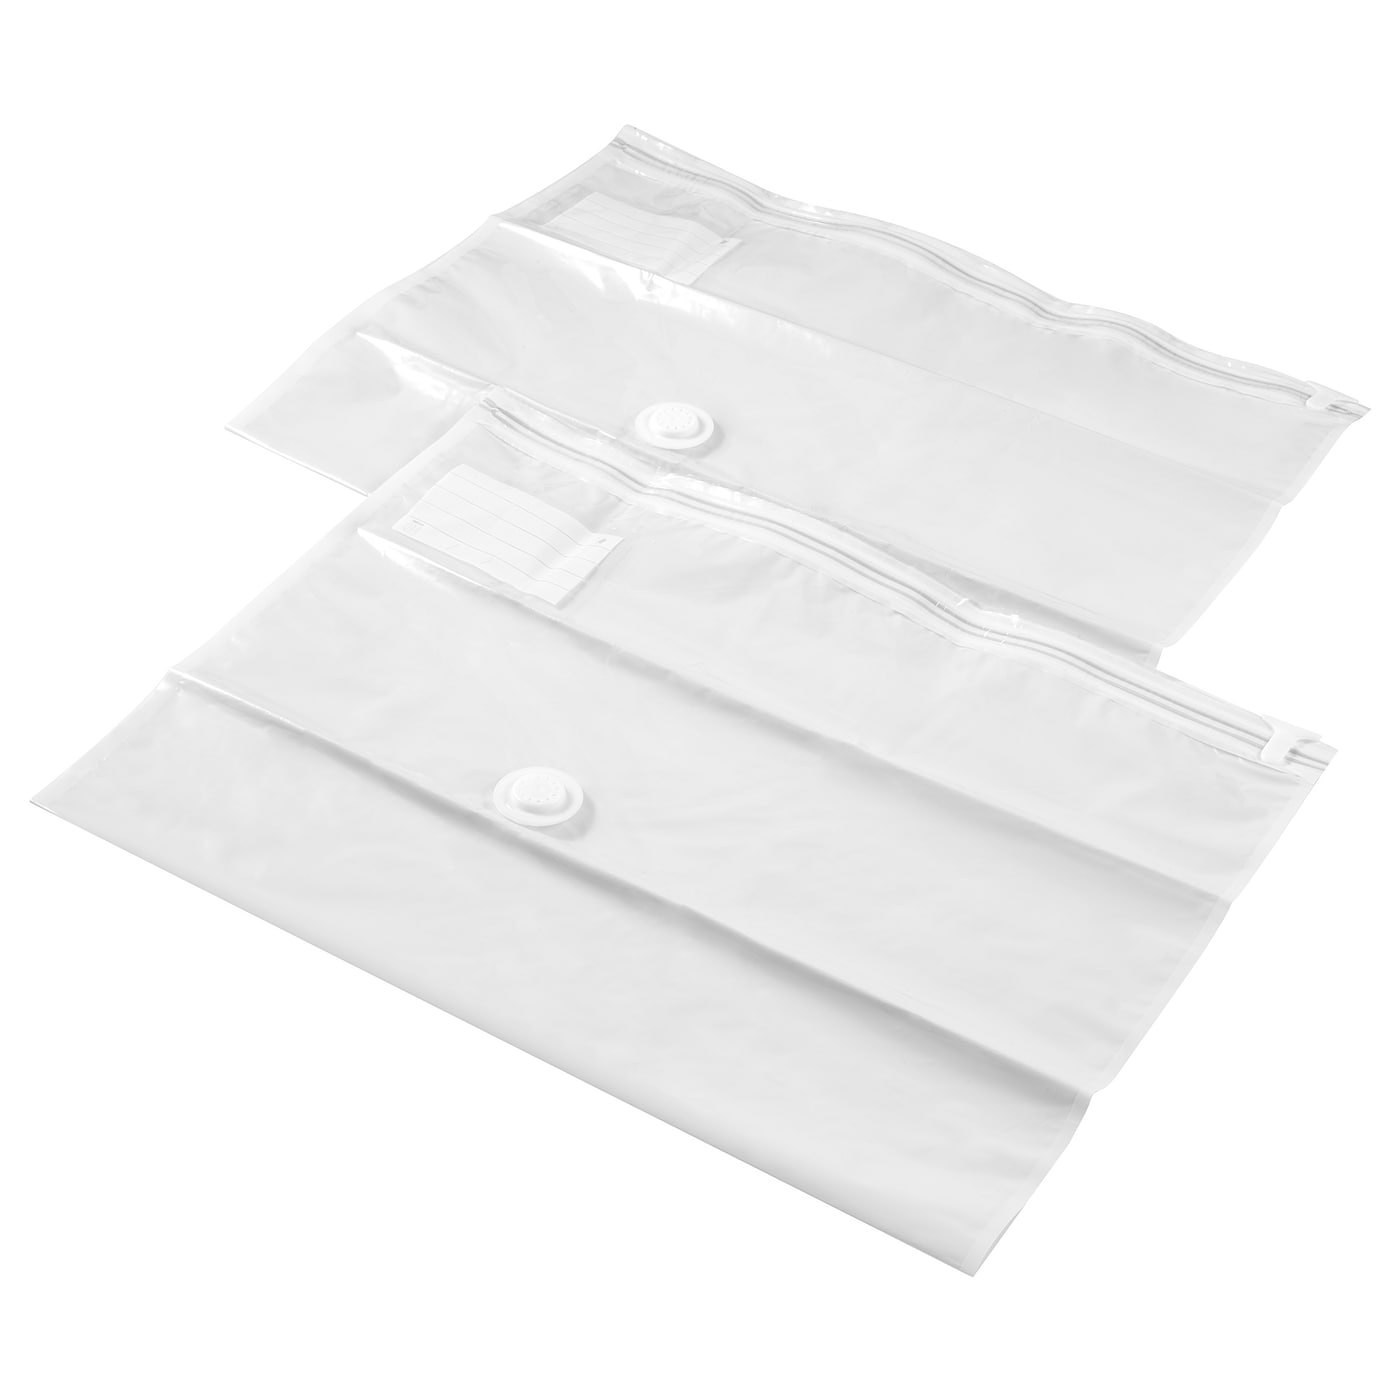 SPANTAD Вакуумный пакет, светло-серый, 67x100 см2 шт. IKEA цена и фото